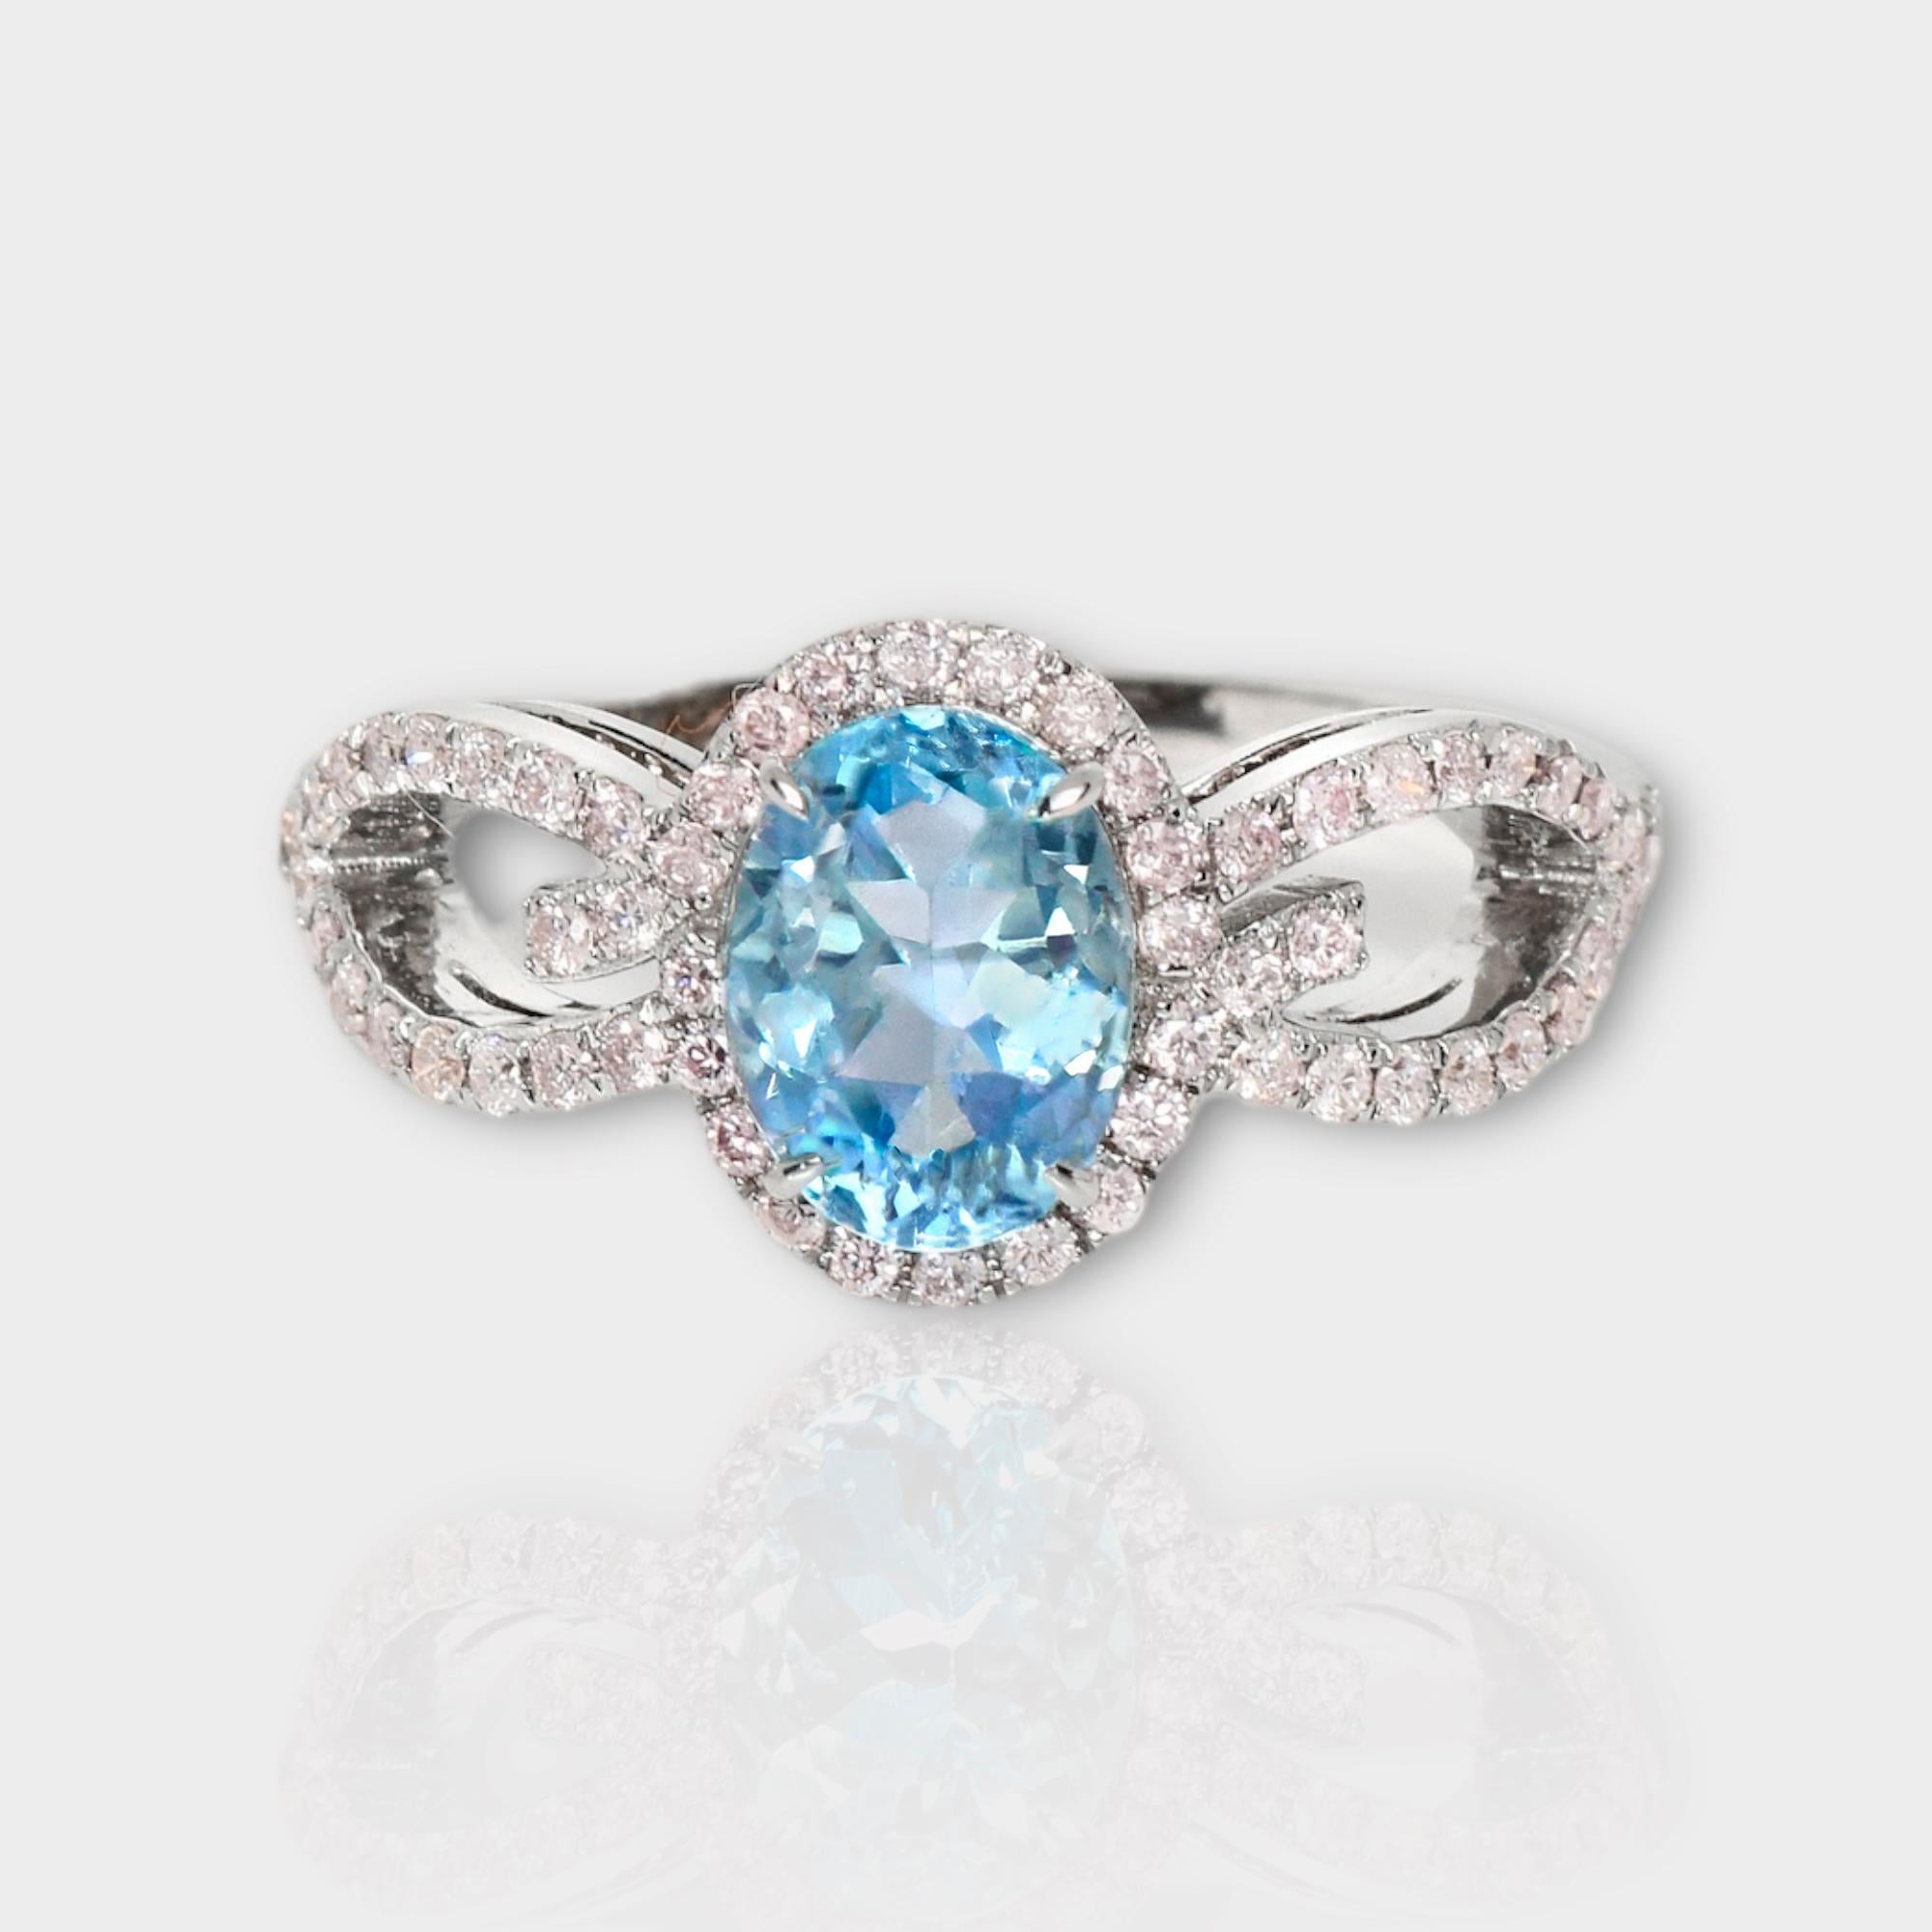 *IGI 14K 1.09 Ct Aquamarine&Pink Diamonds Antique Art Deco Style Engagement Ring* (bague de fiançailles)

Aigue-marine bleue naturelle pesant 1,09 ct sertie sur un anneau en or blanc 14K avec des diamants roses ronds de taille brillant pesant 0,38